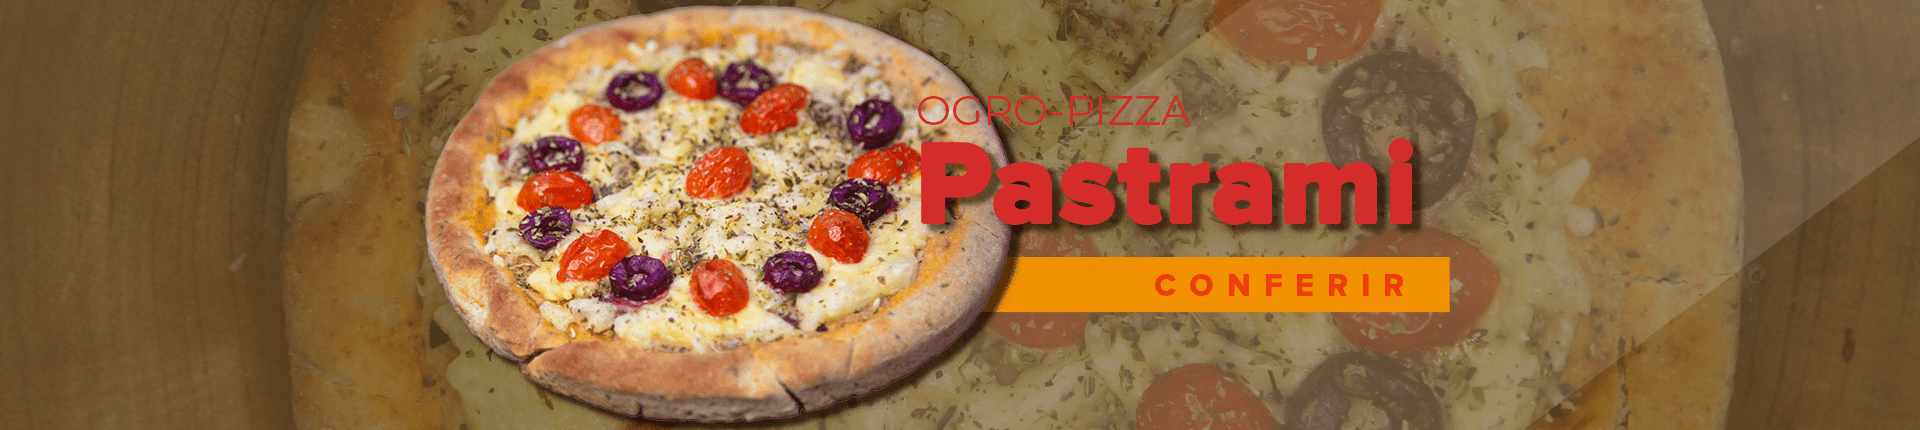 Ogro-Pizza Pastrami